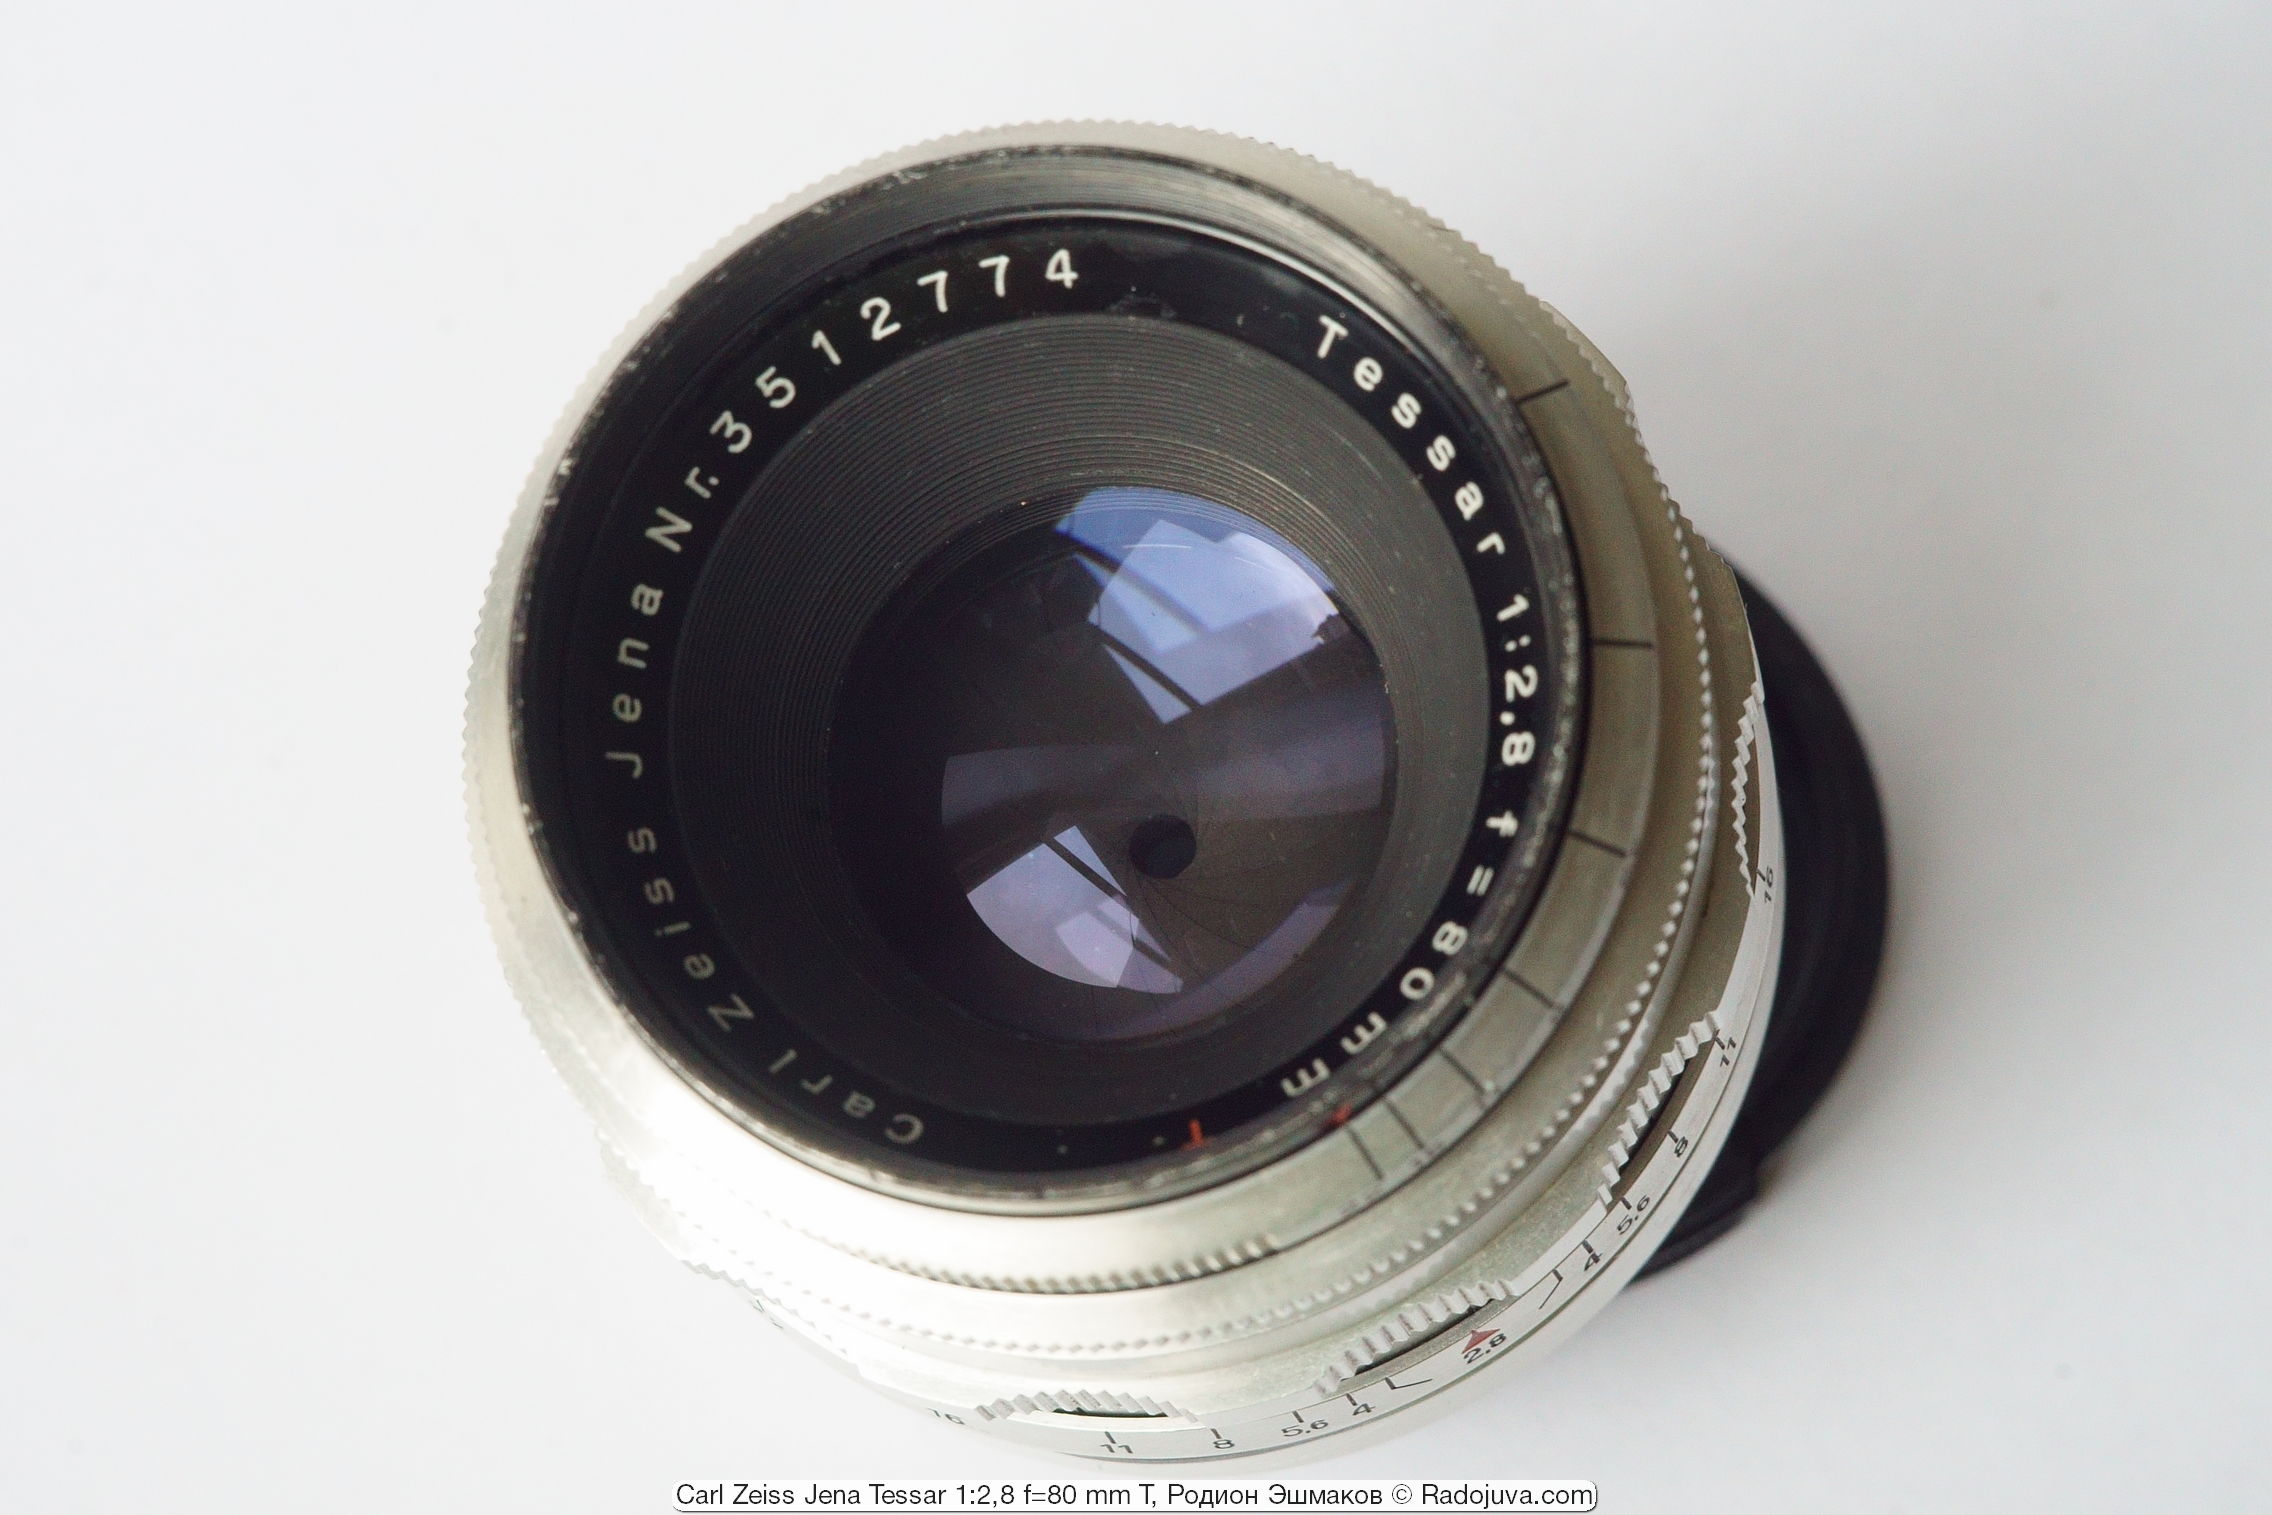 De lenzen van de Tessar 80/2.8 lens hebben een violetblauwe kleur.